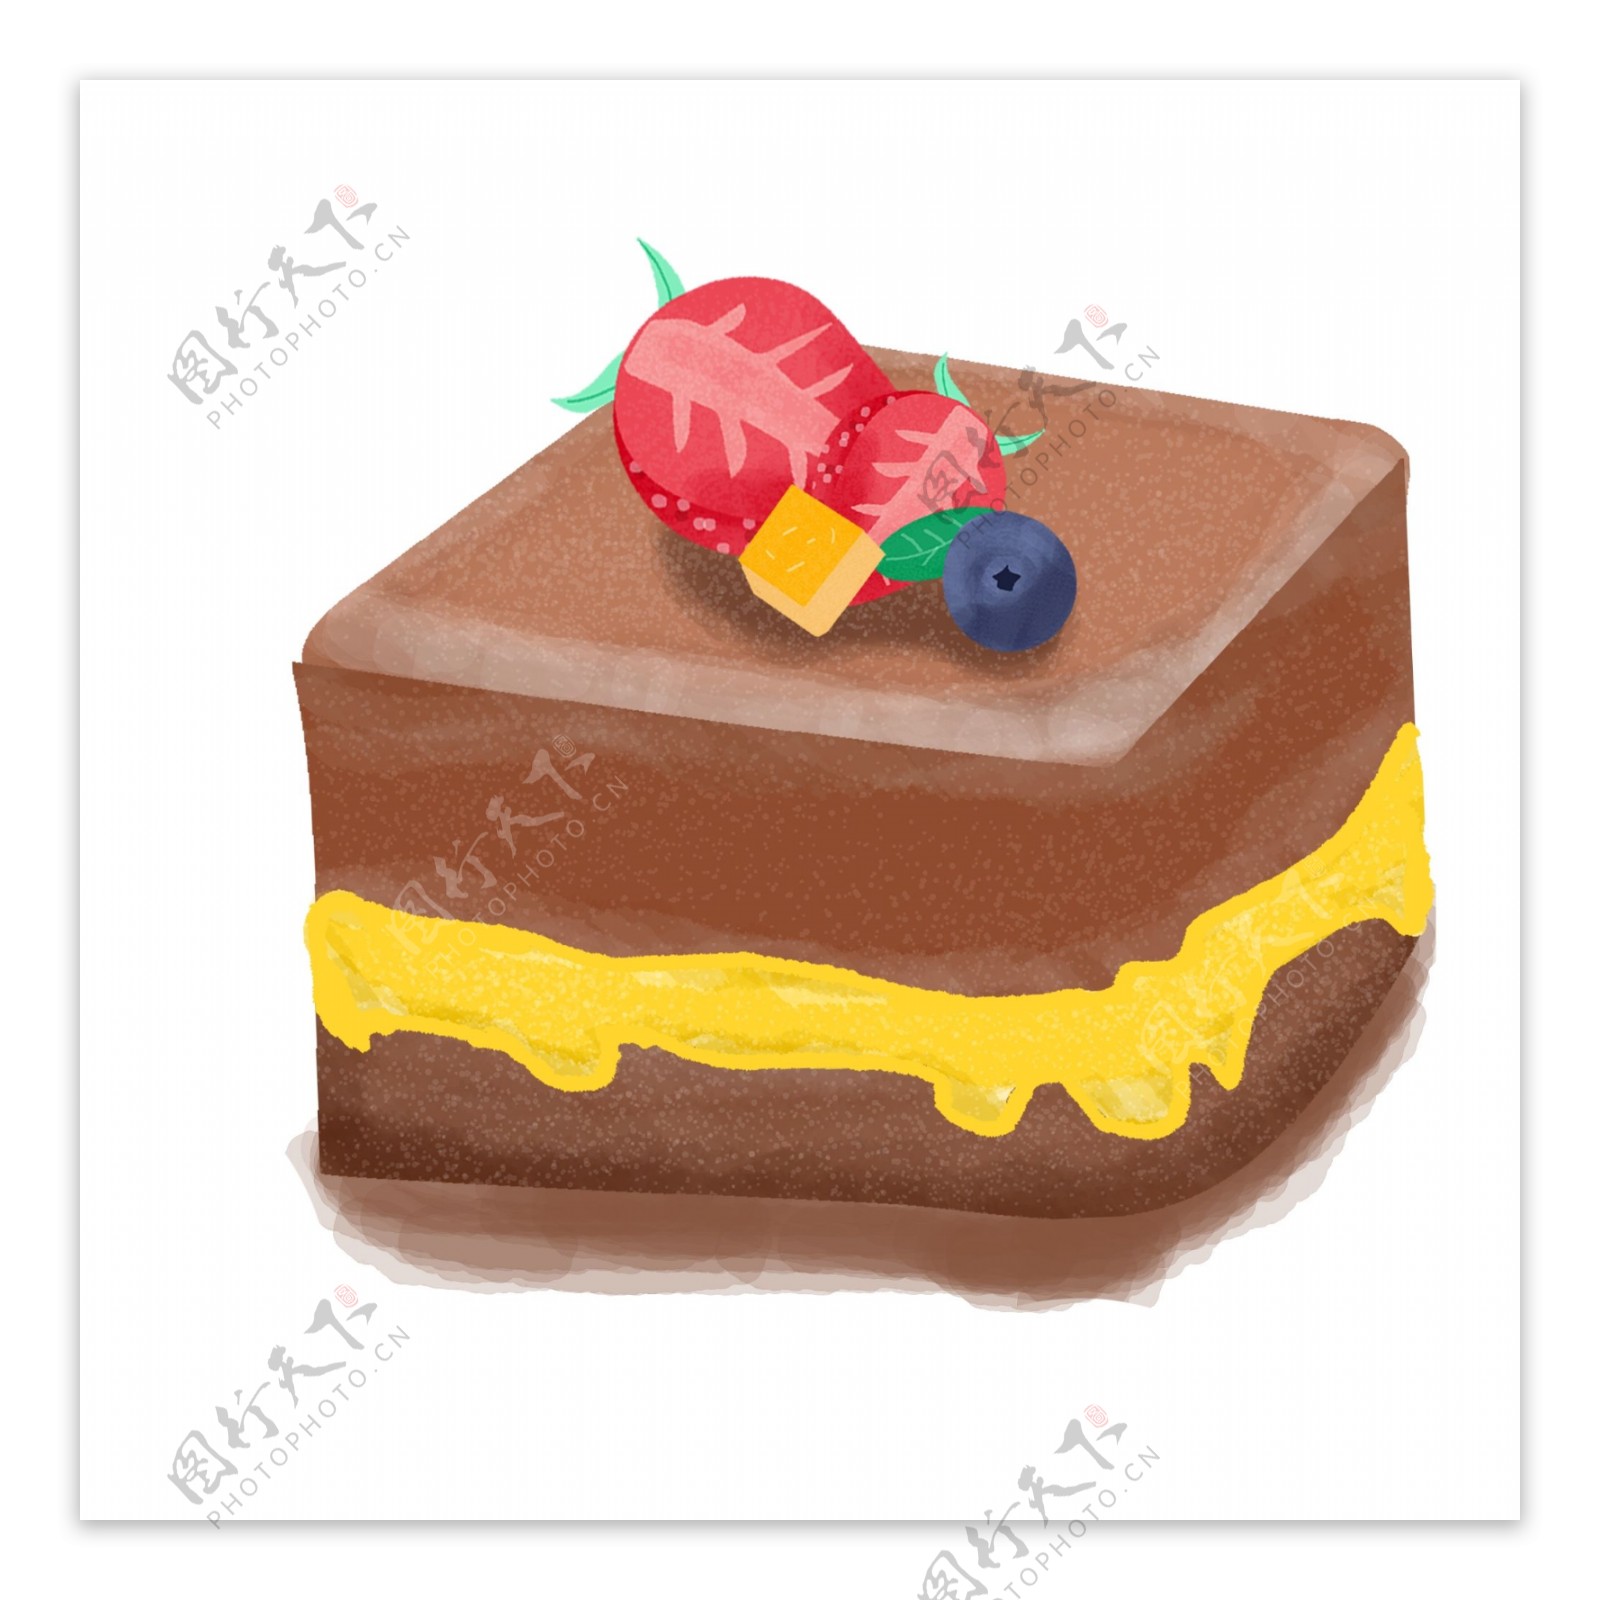 一块美味的巧克力蛋糕卡通设计